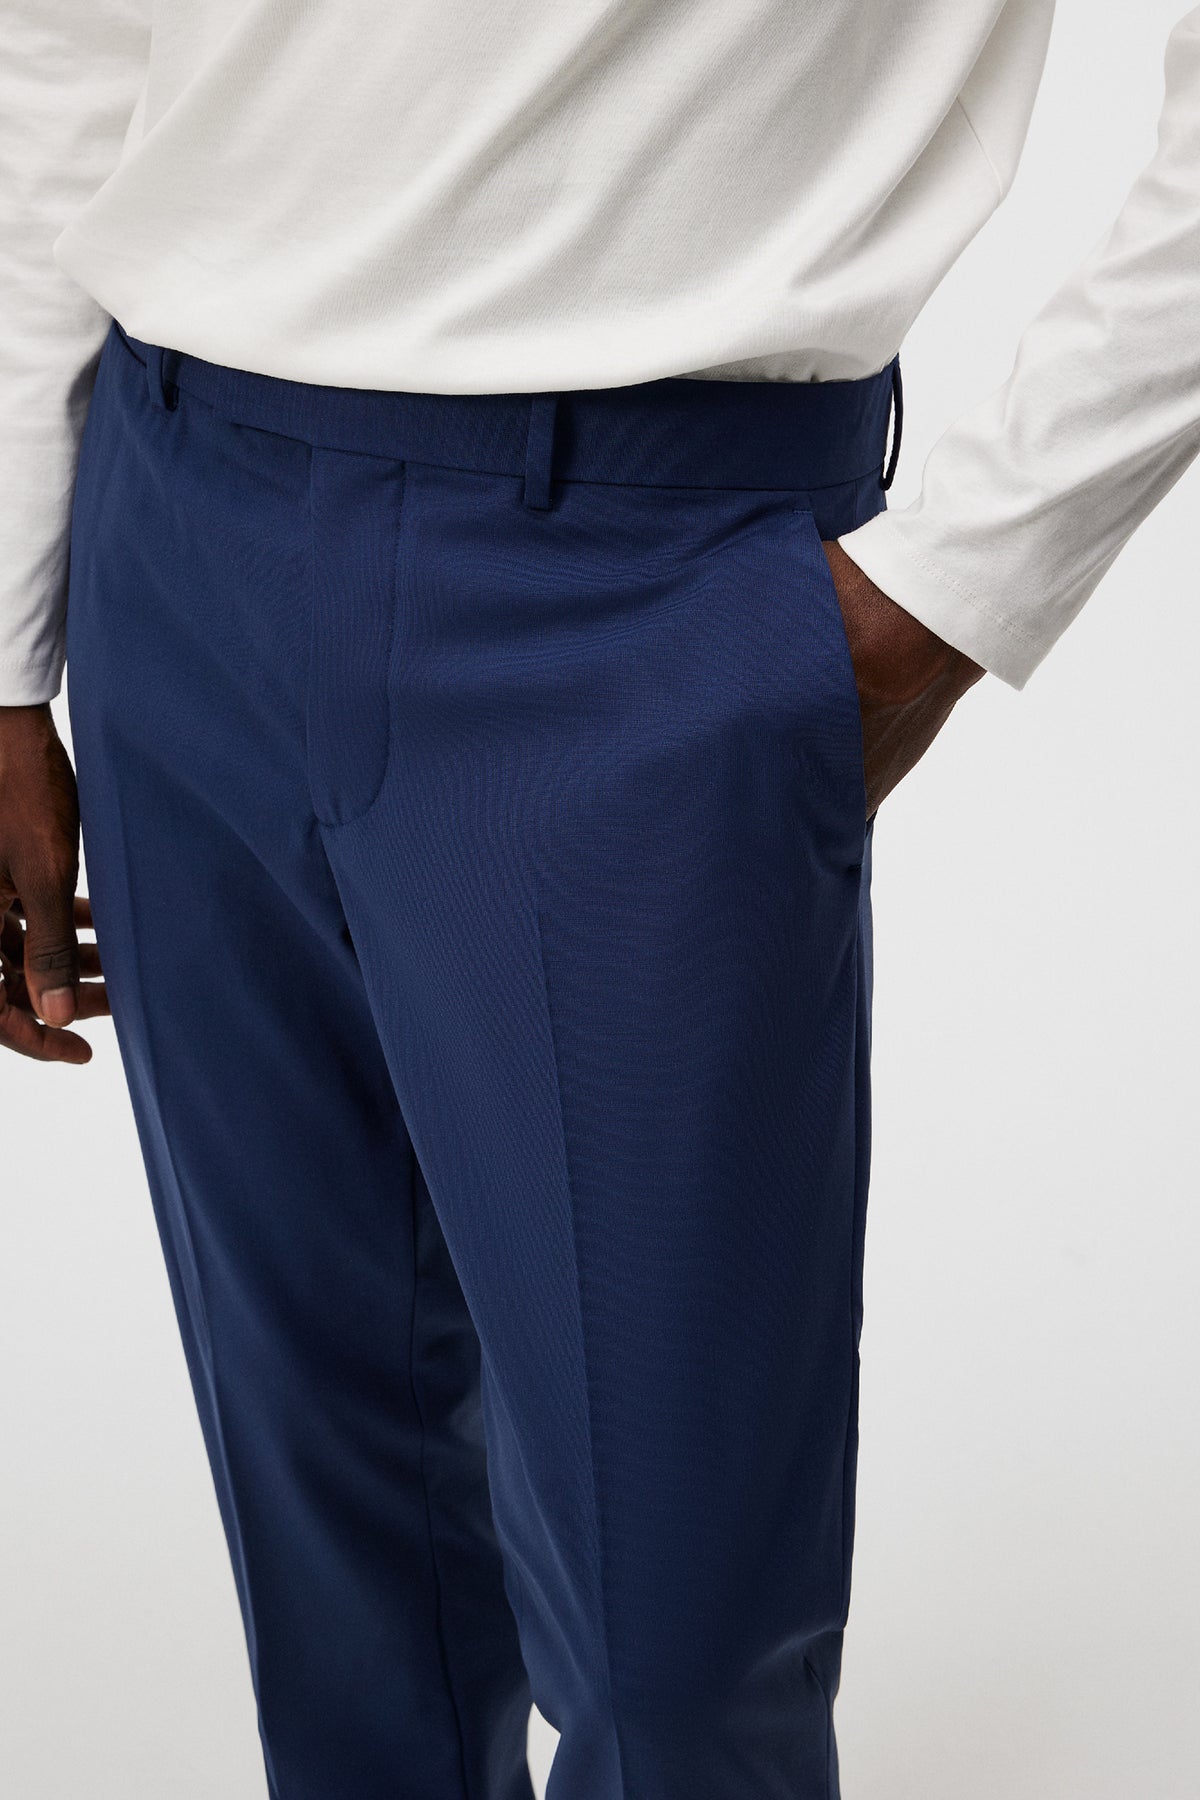 Grant Bi Stretch Pants / Blue Indigo